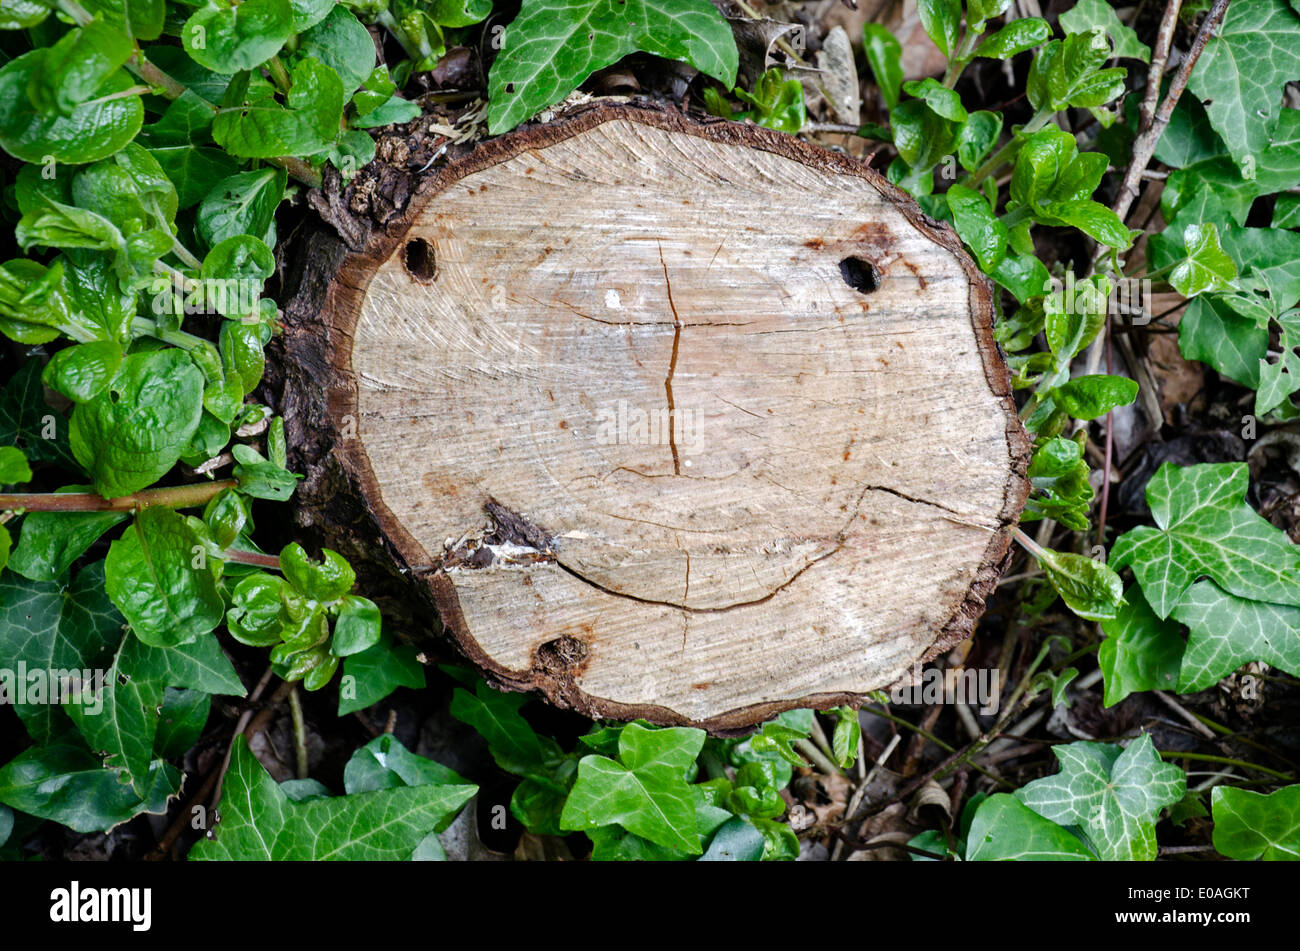 Ein Lächeln auf den Lippen glückliches Gesicht in einem ausgeschnittenen Baumstamm gefunden. Stockfoto